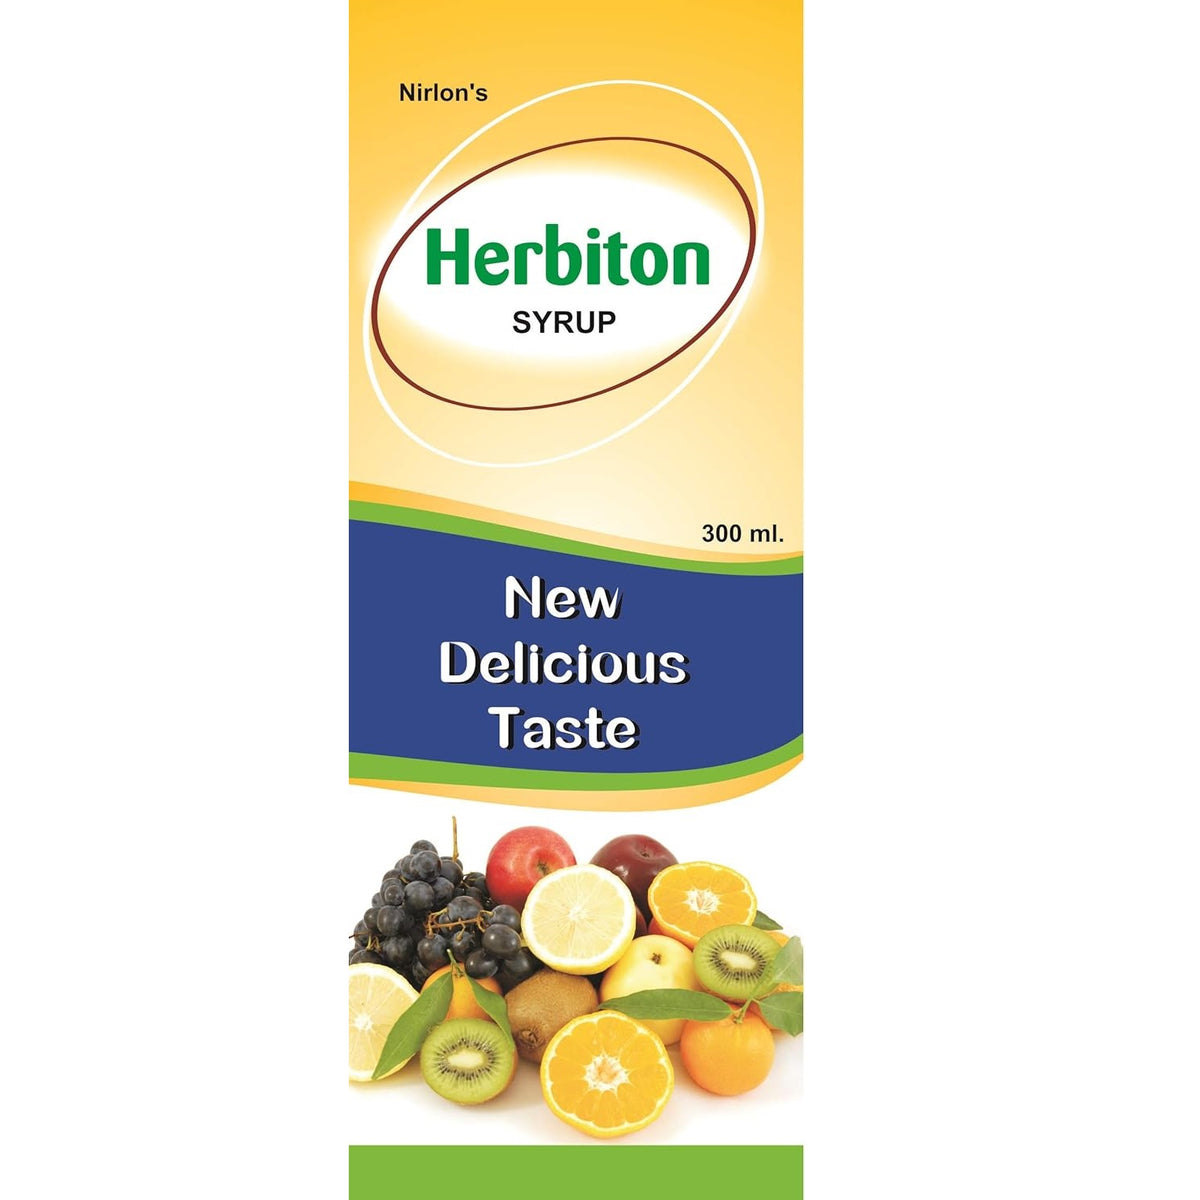 Nirlon's New Delicious Taste Herbiton Syrup 450ml